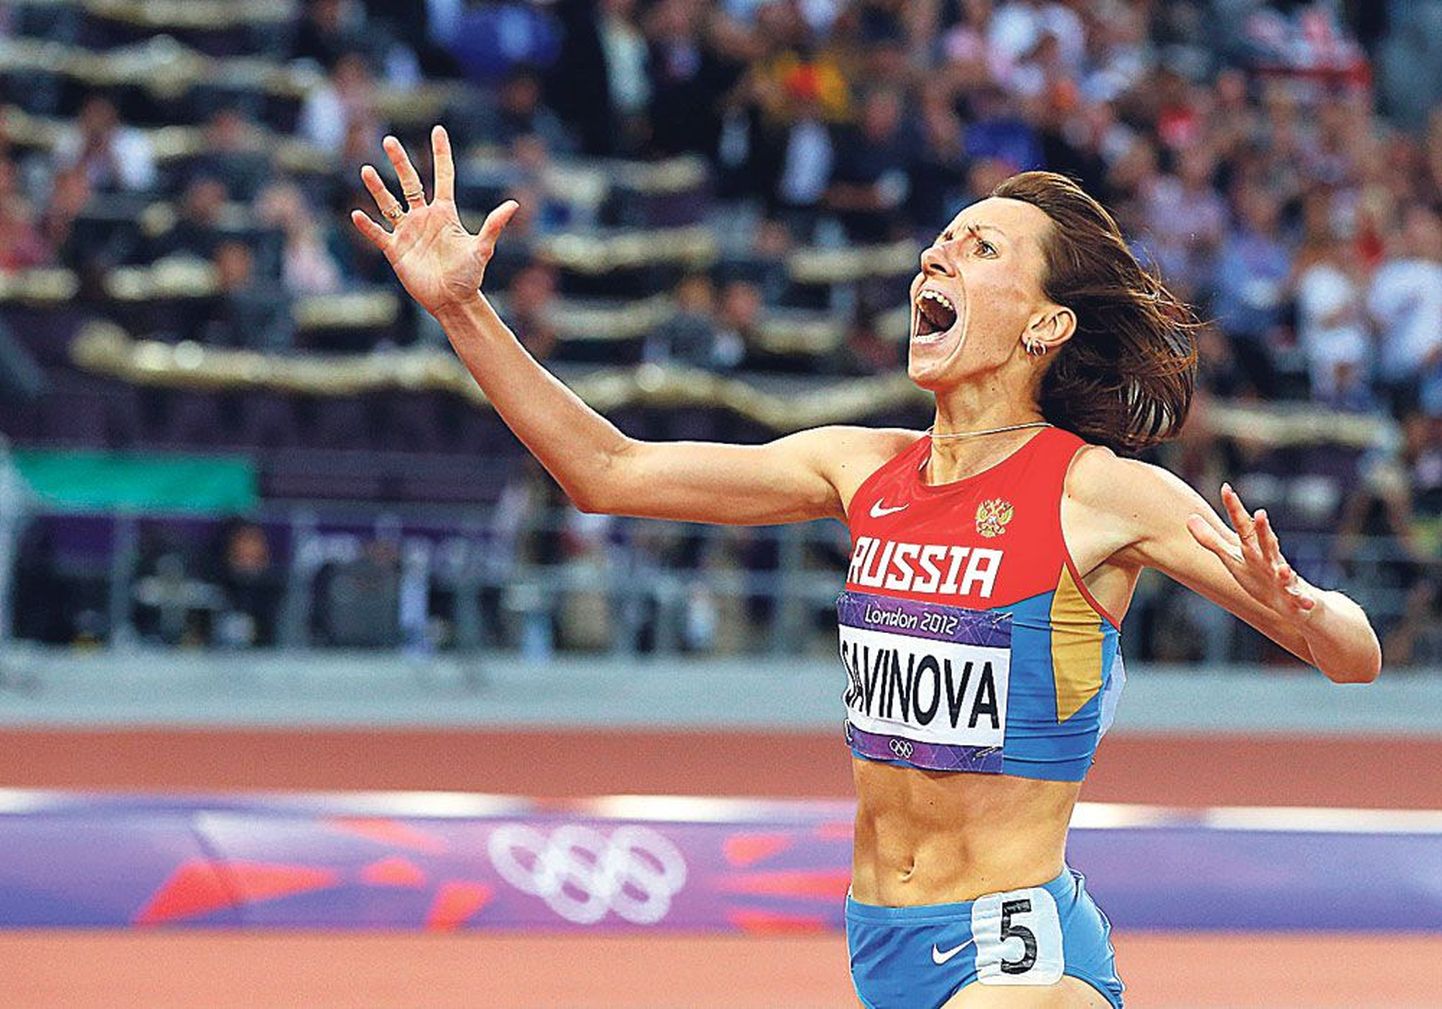 Олимпийская чемпионка Мария Савинова (золотая медаль в беге на 800 м на Лондонской олимпиаде) – одна из тех, кого могут пожизненно отстранить от участия в соревнованиях.